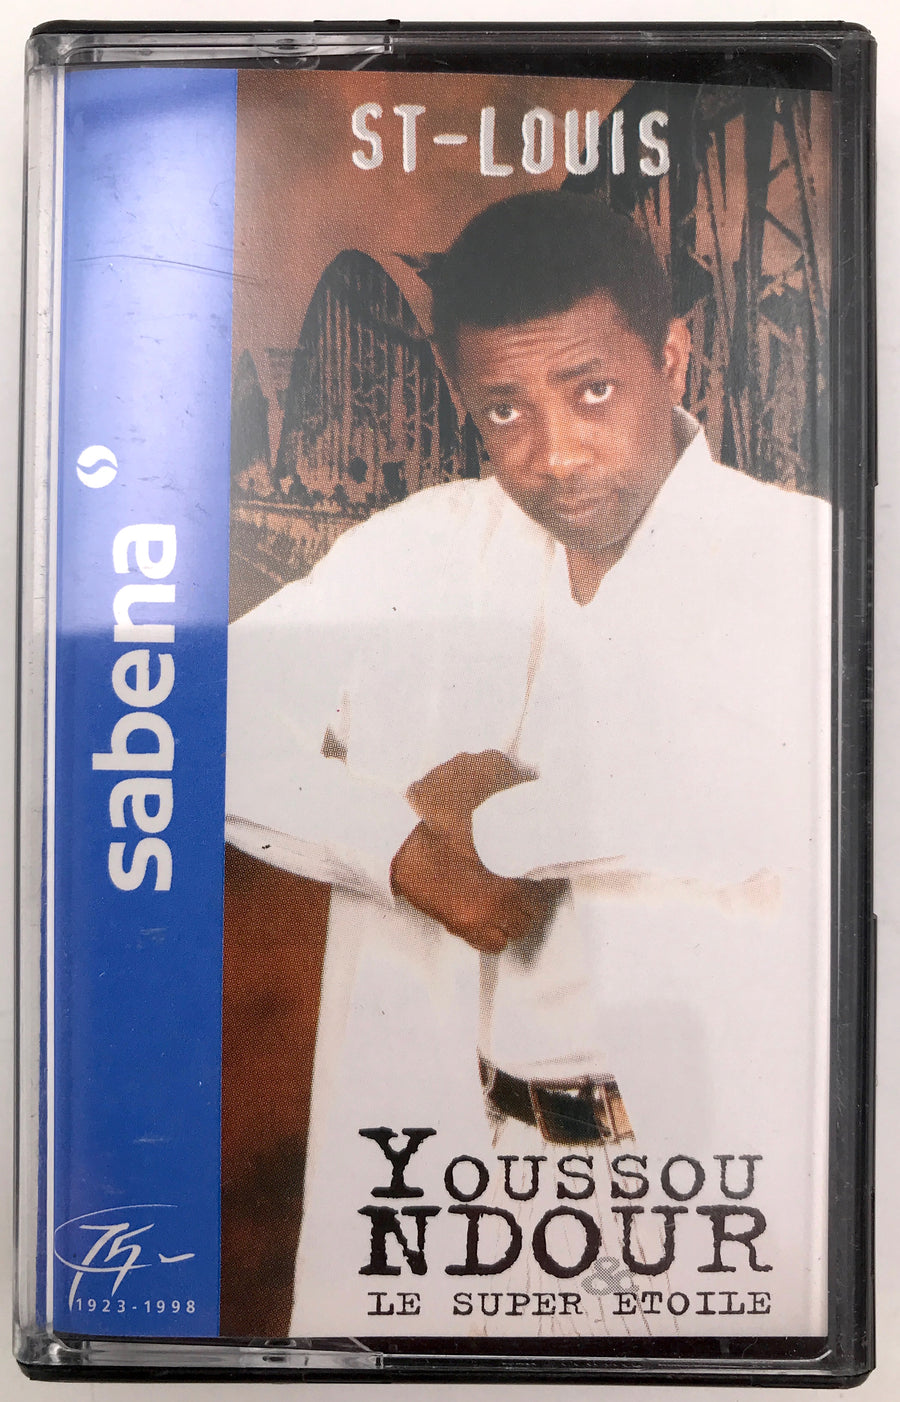 Deux cassettes audio dans leur boîtier : ST - LOUIS, Youssou N'DOUR, LE SUPER ETOILE ( 75ème Anniversaire de la Sabena )